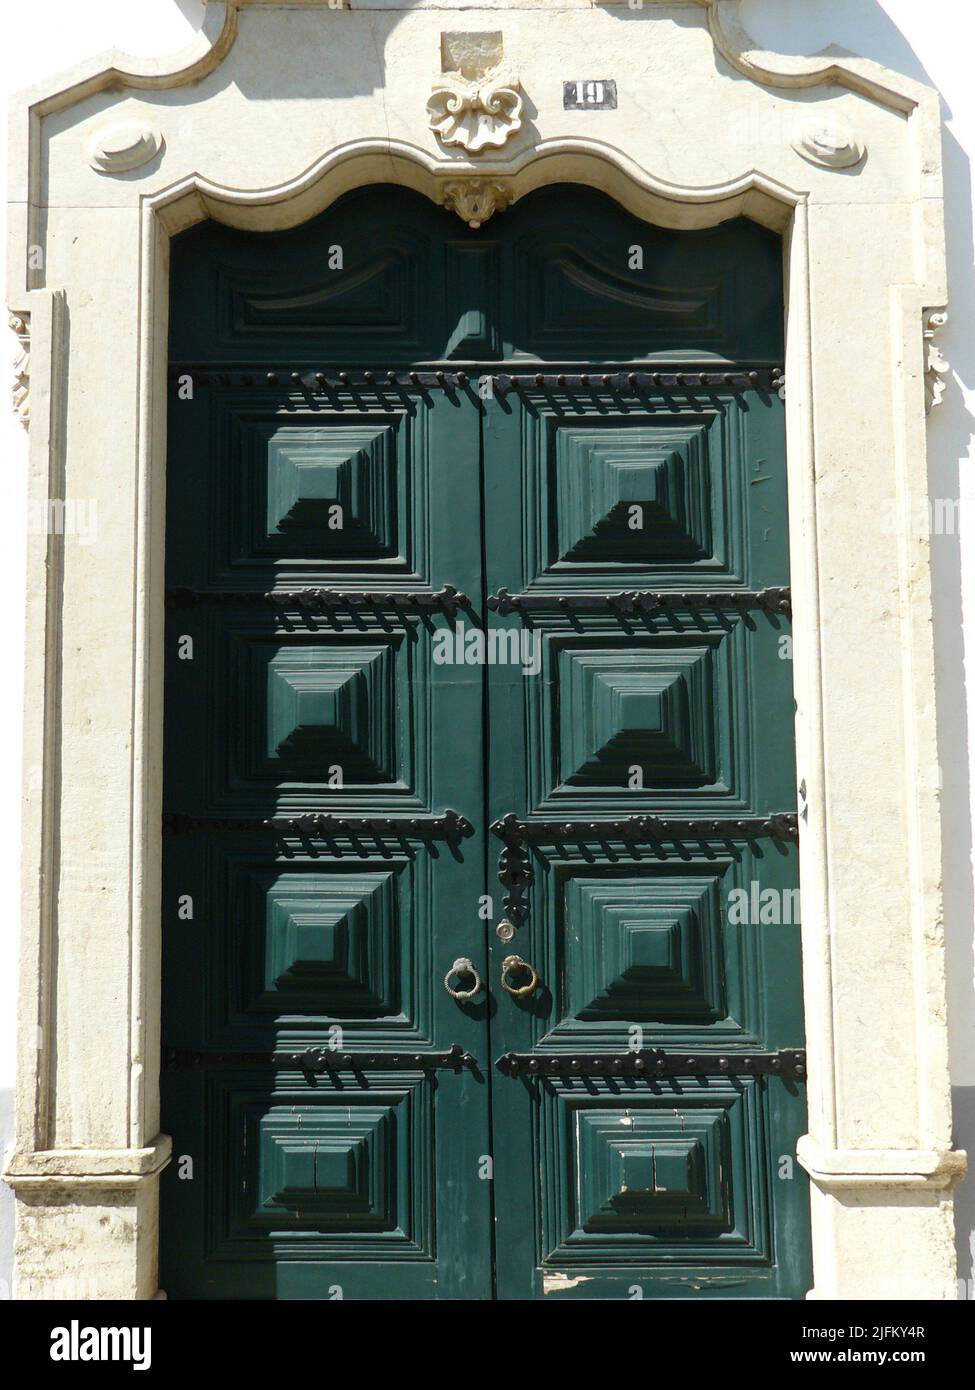 Faro (Algarve) Portugal. Porte d'entrée typique d'une maison dans le centre historique de la ville de Faro dans l'Algarve portugais. Banque D'Images